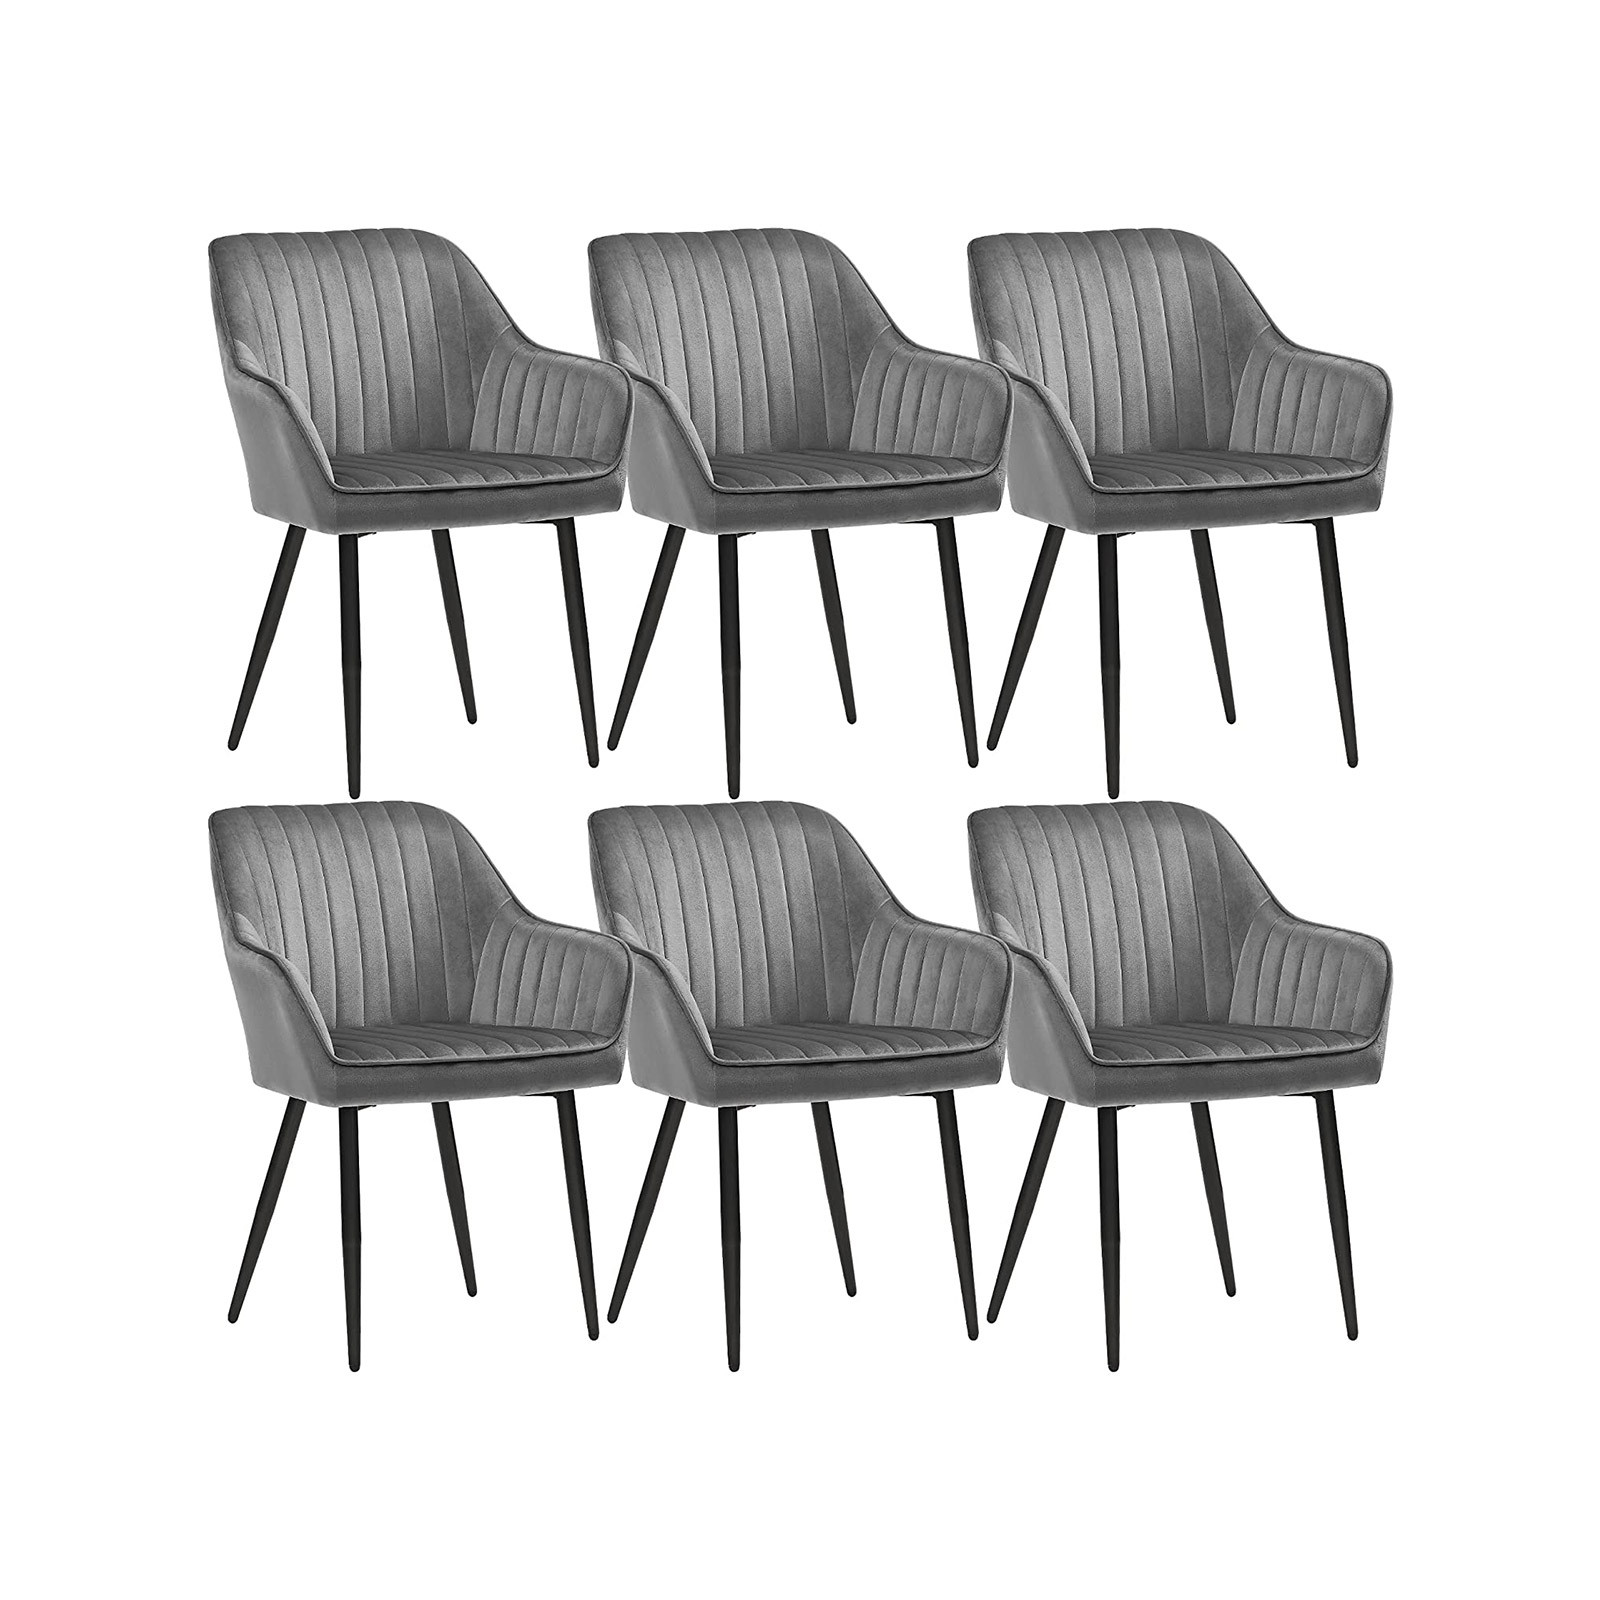 Set šiestich jedálenských stoličiek LDC087G03-6 (6 ks)